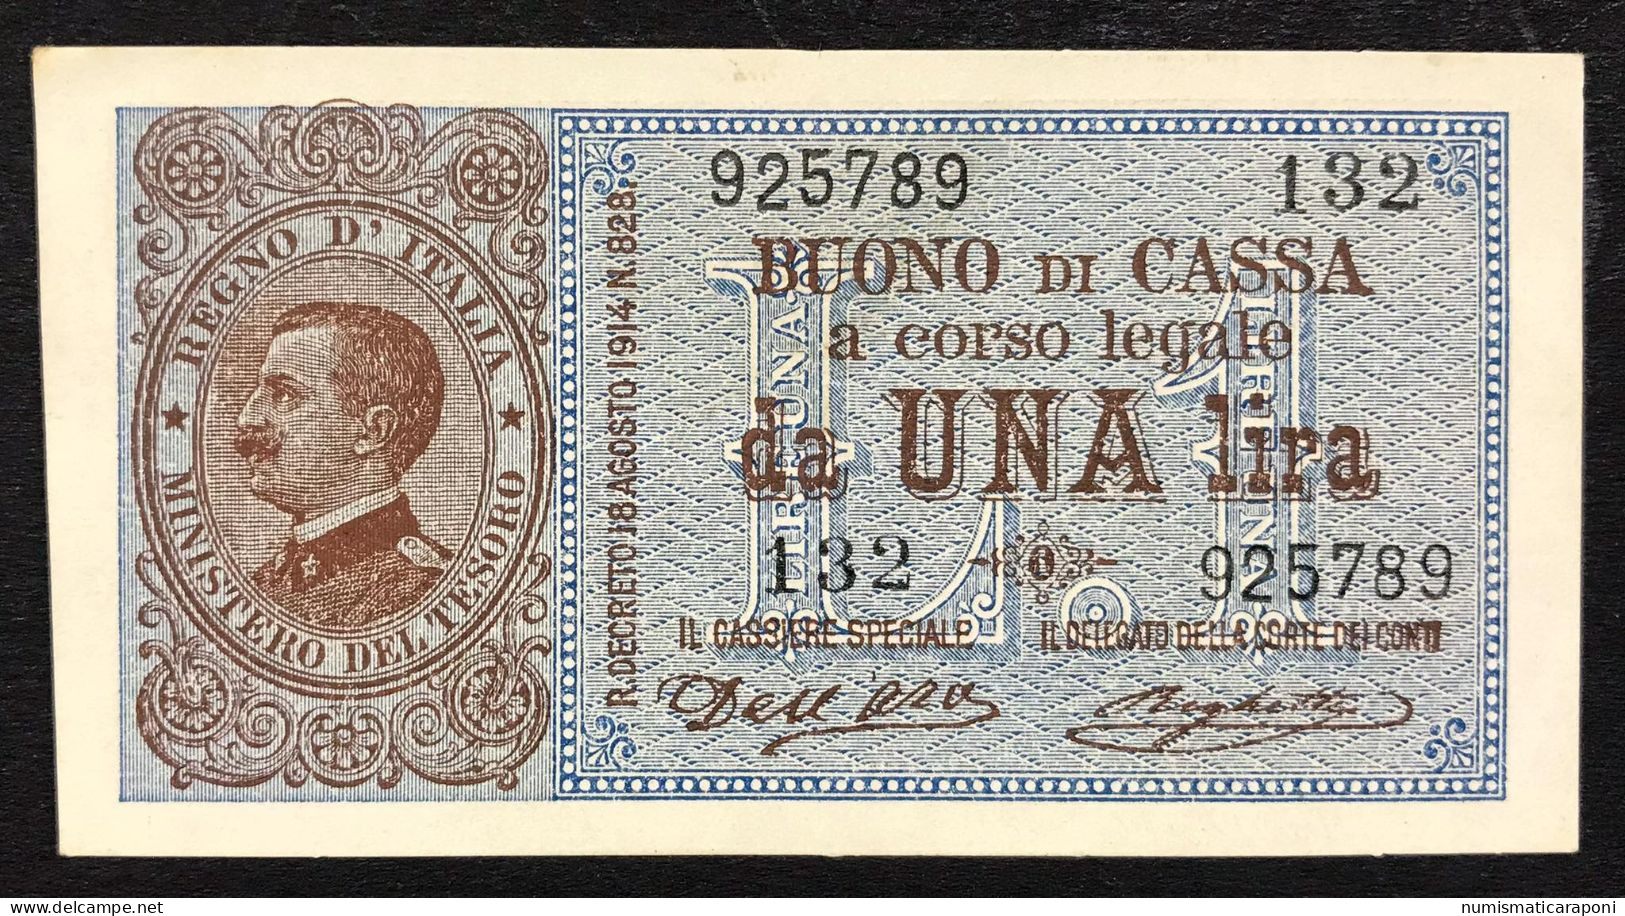 1 LIRA VITTORIO EMANUELE III° 21 09 1914 Sup+ OTTIMO E INTERESSANTE BIGLIETTO  LOTTO 4674 - Italië – 1 Lira